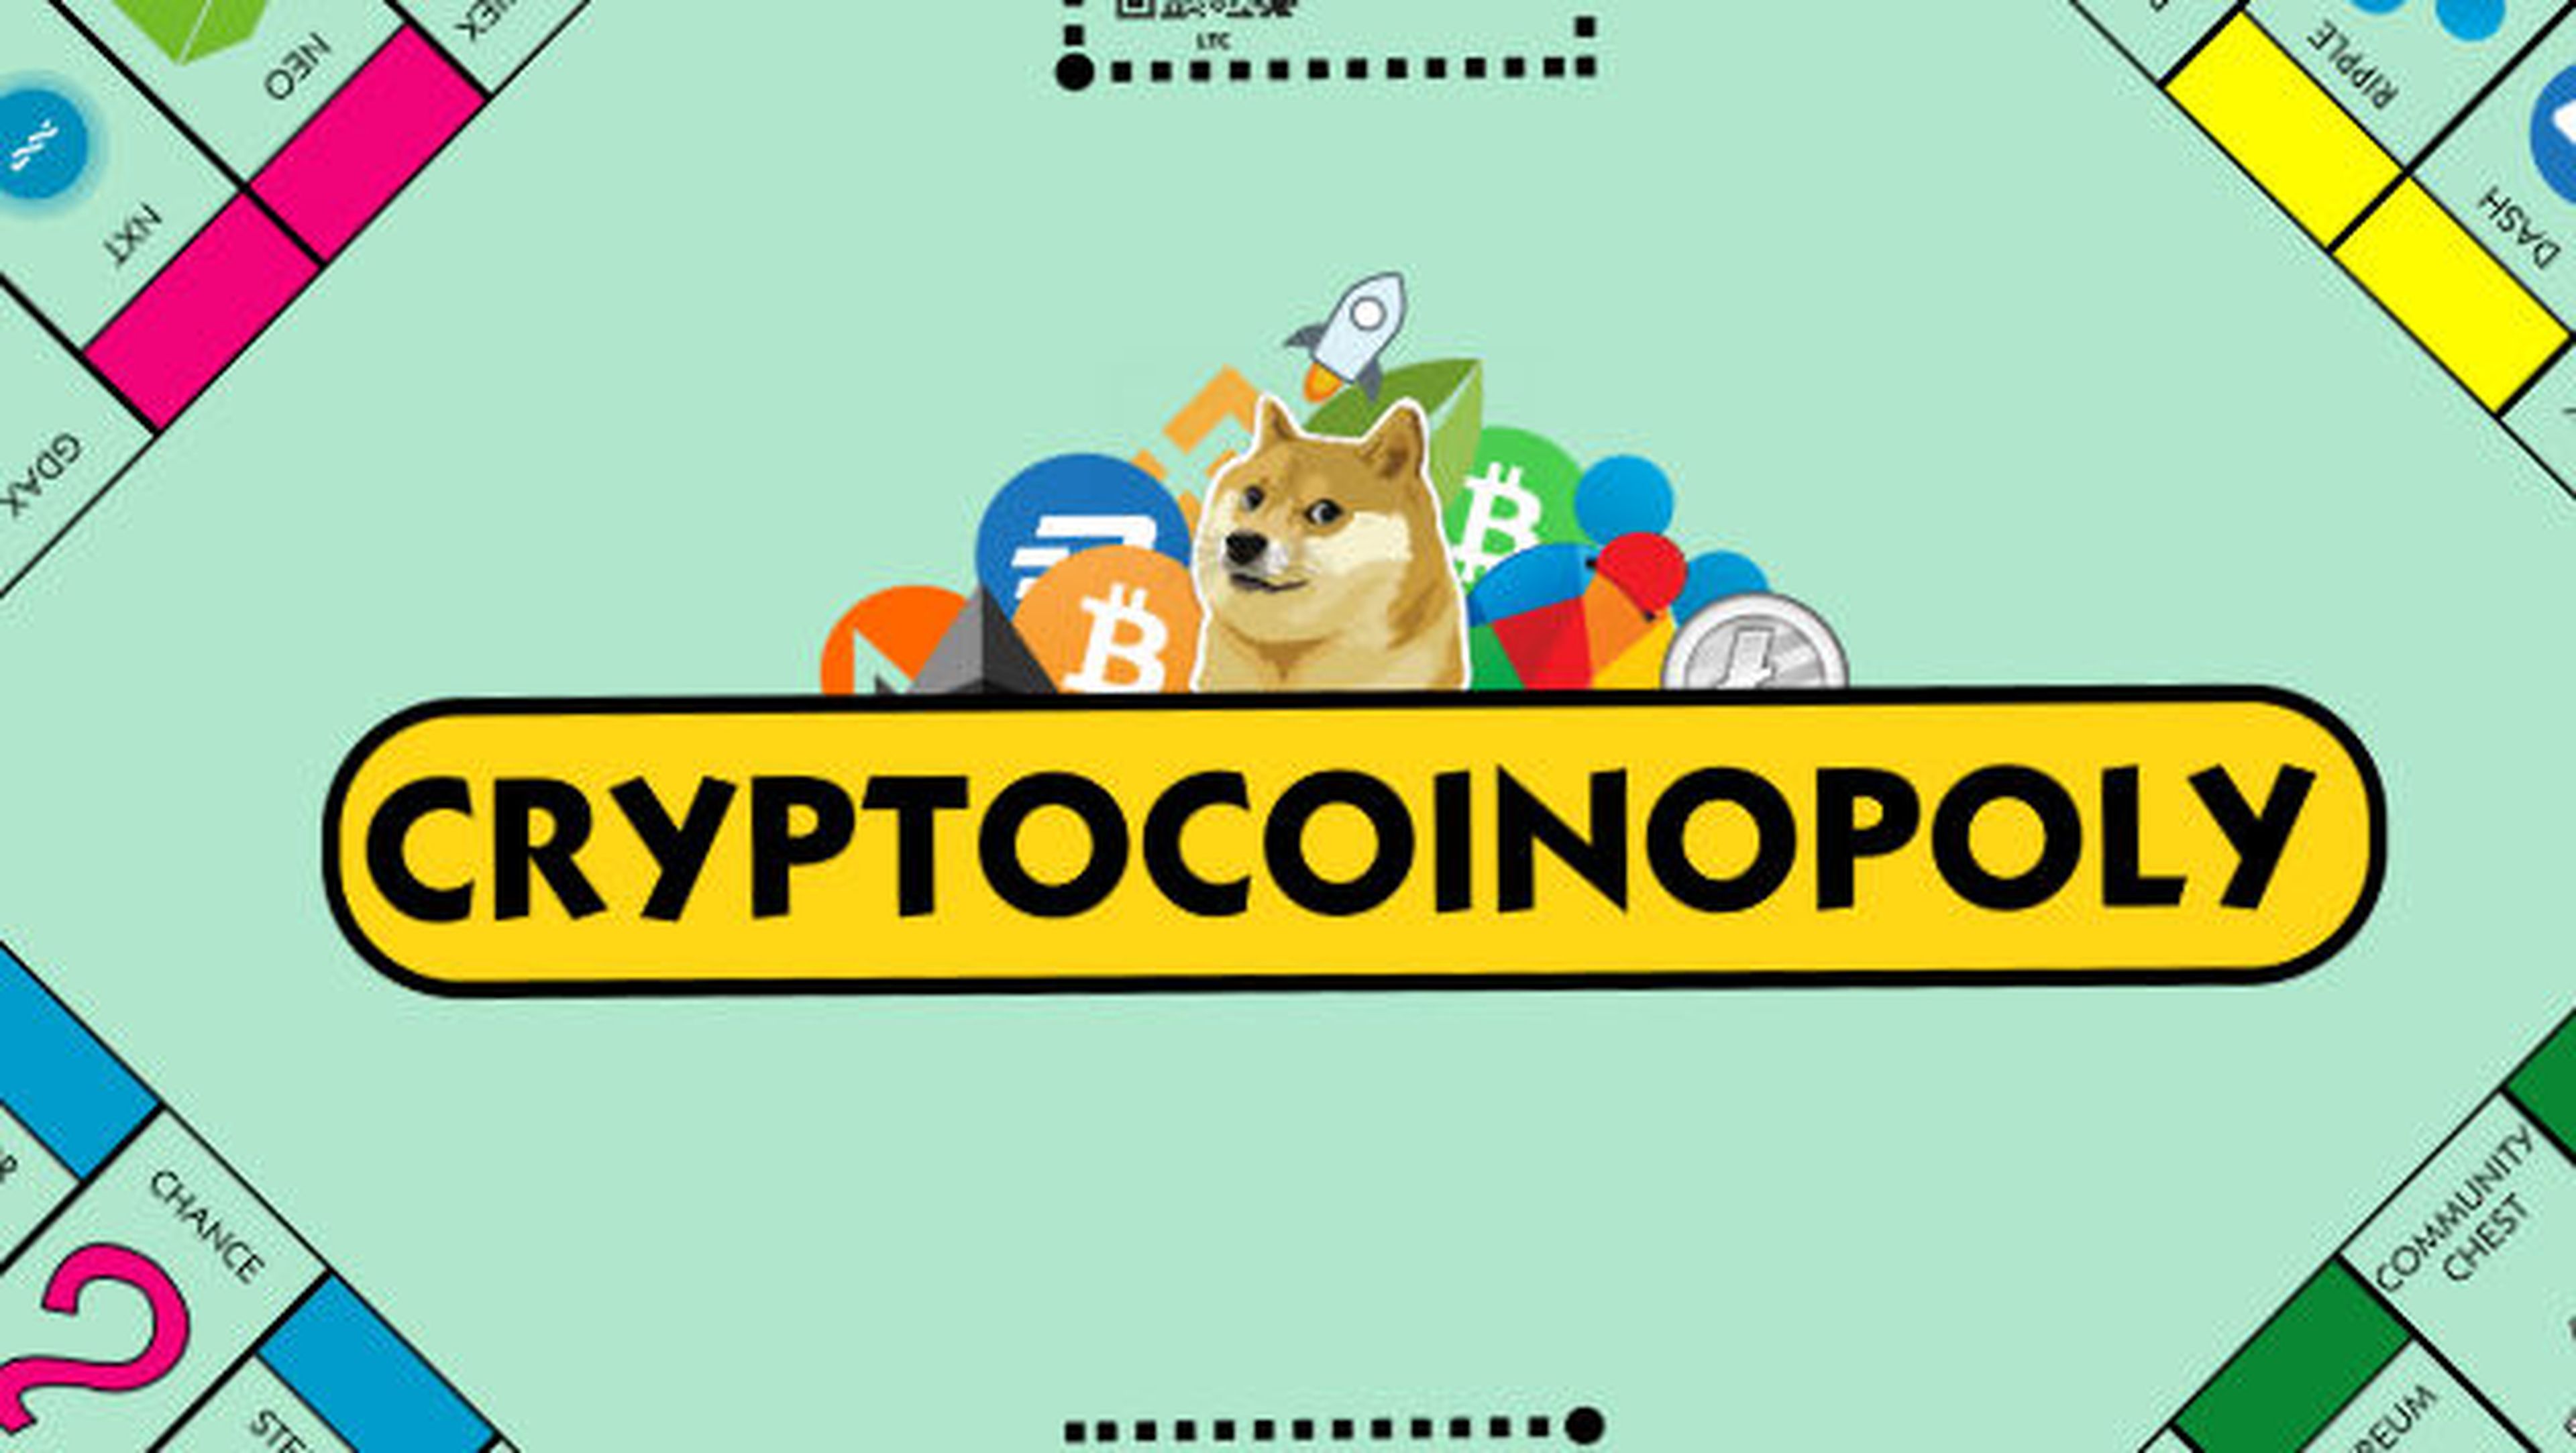 Ya puedes descargar gratis Cryptocoinpoly, el Monopoly de las criptomonedas.